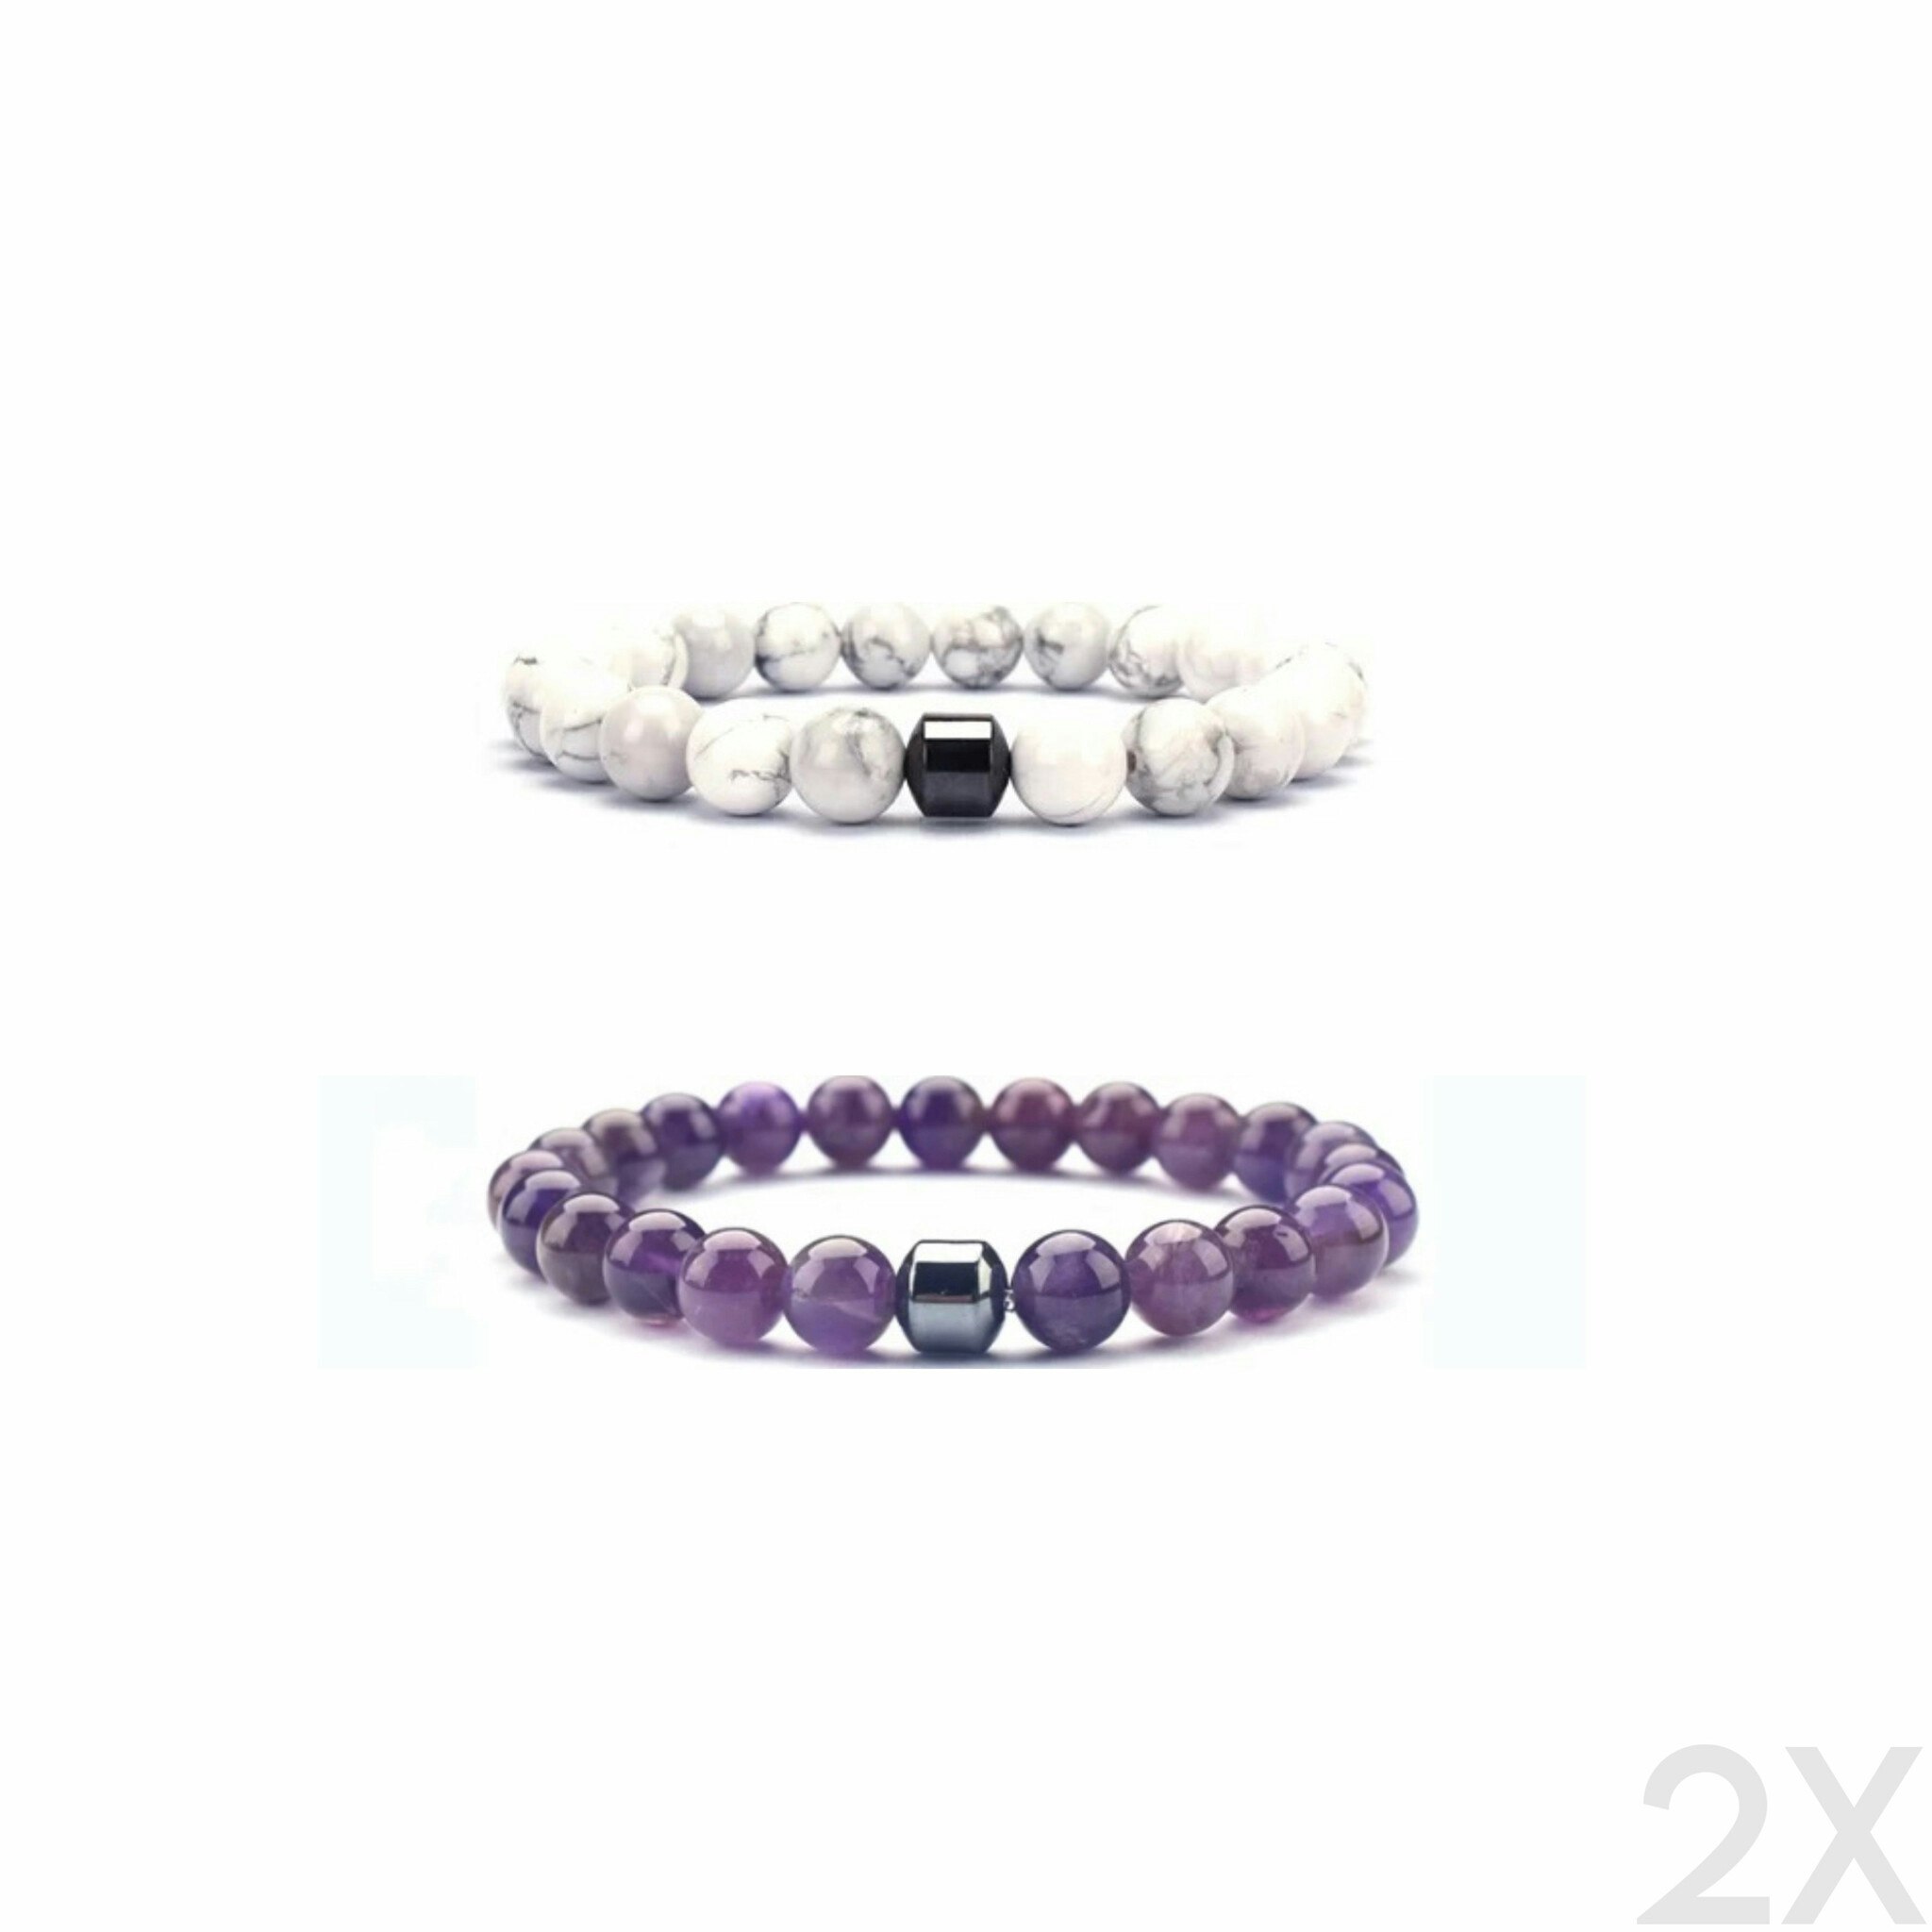 The White & Purple Lavoro Bracelet Bundle